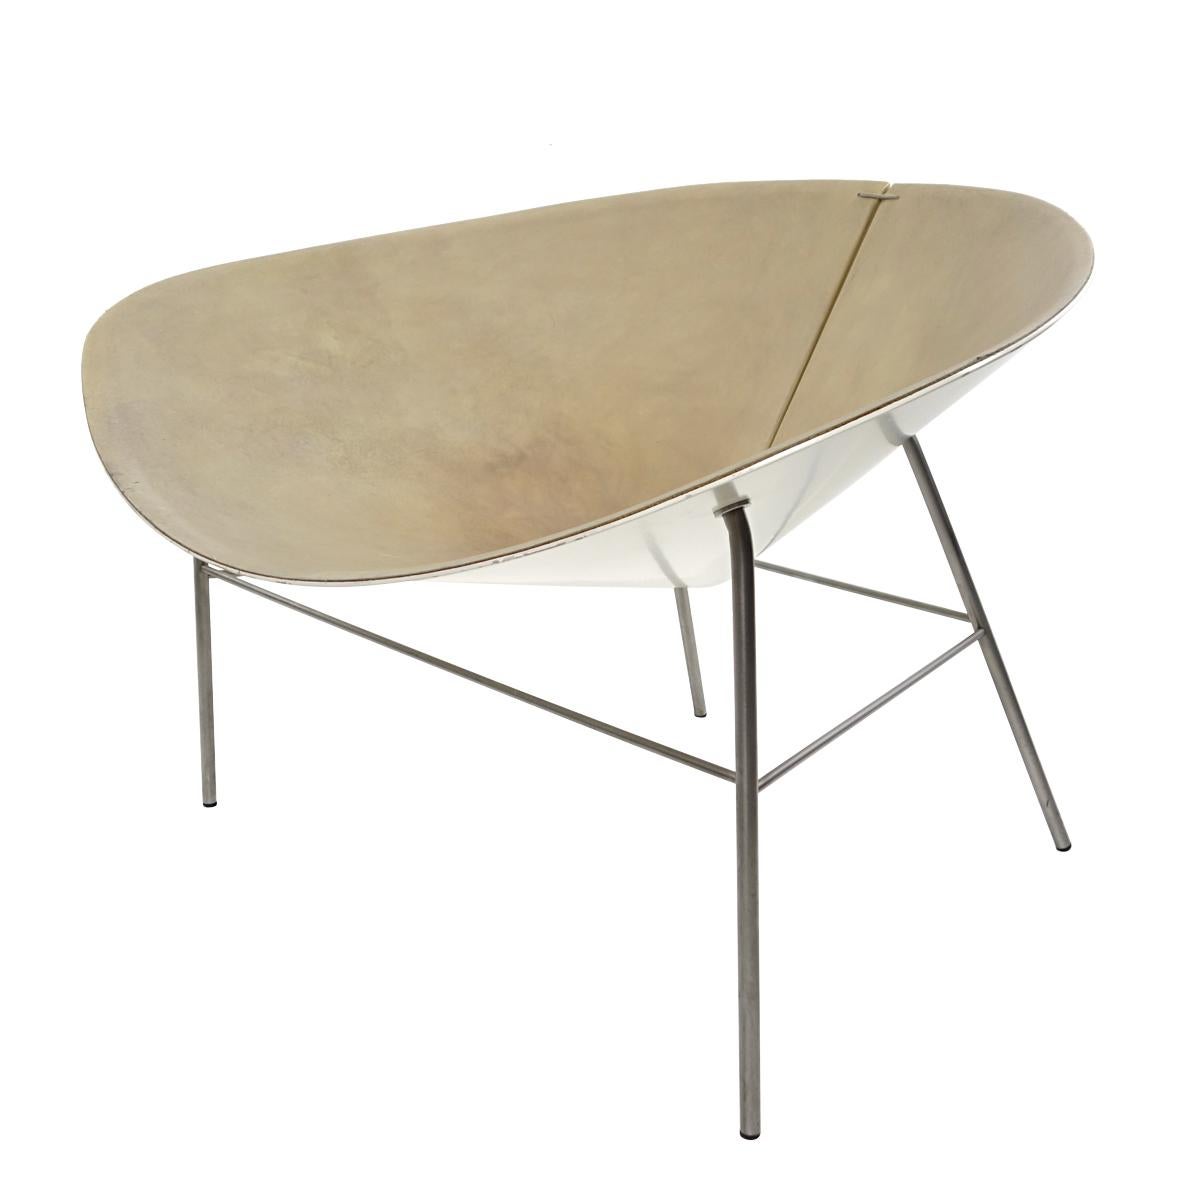 La chaise longue Bloom a été conçue en 2000 par Gerard Piergiorgio Cazzaniga pour Living Divani.
Une simplicité de bon goût se retrouve dans les lignes claires associées à des matériaux raffinés. Ils donnent un résultat spectaculaire... une chaise